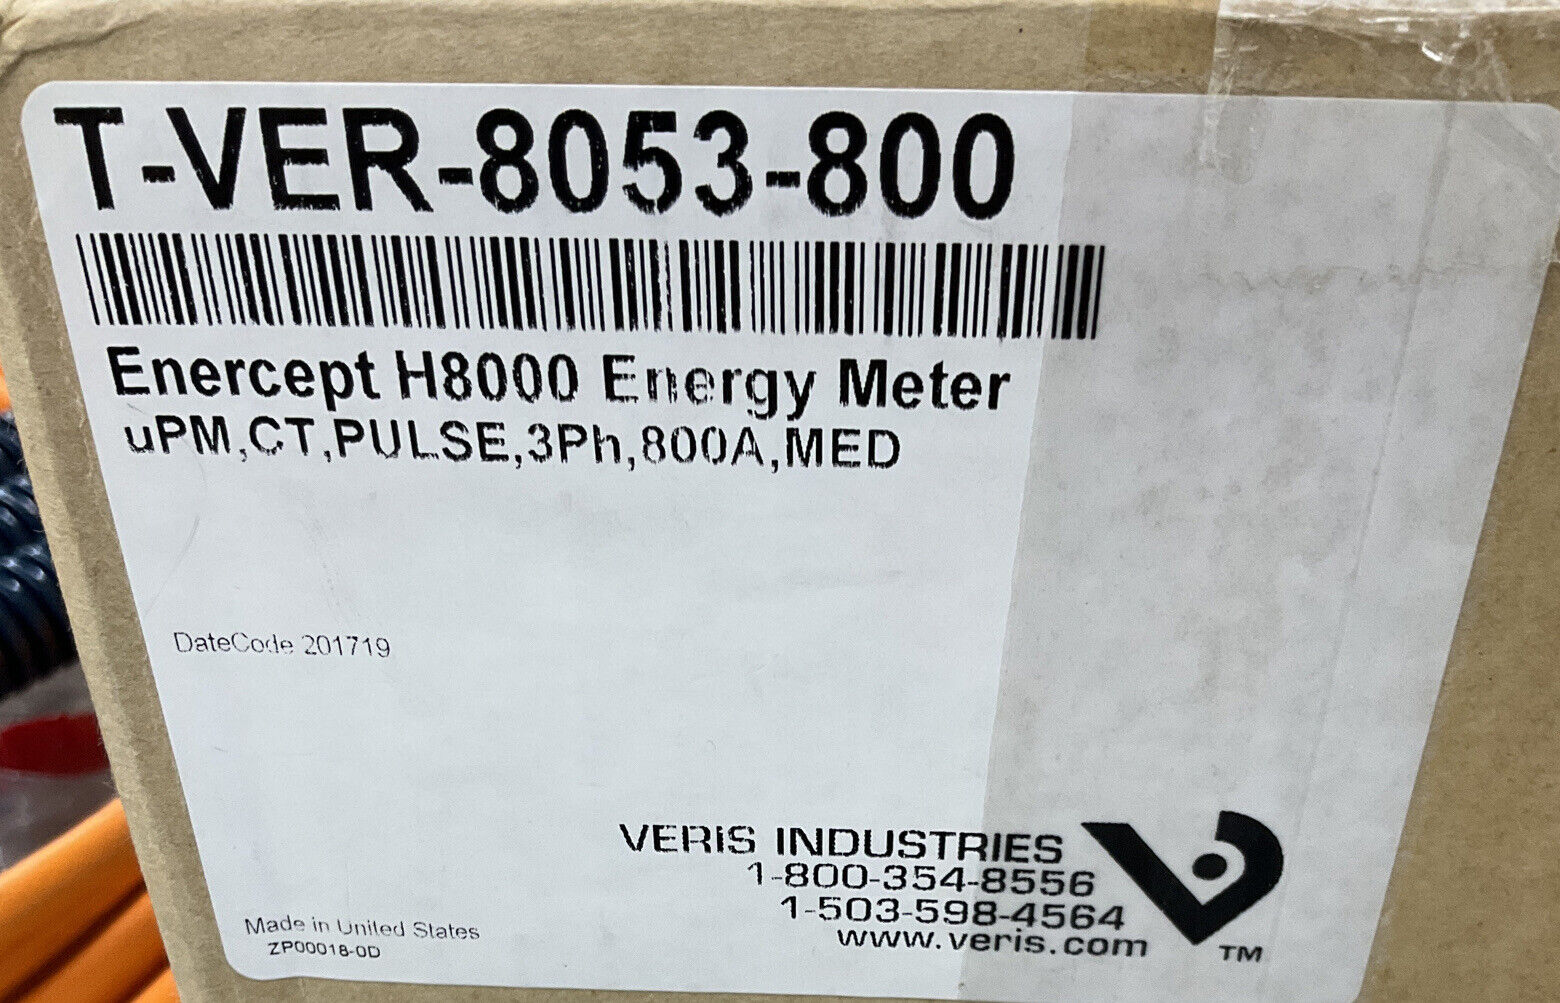 Veris T-VER-8053-800 Enercept H8000 Energy Meter 800A, 3-Phase (OV120)